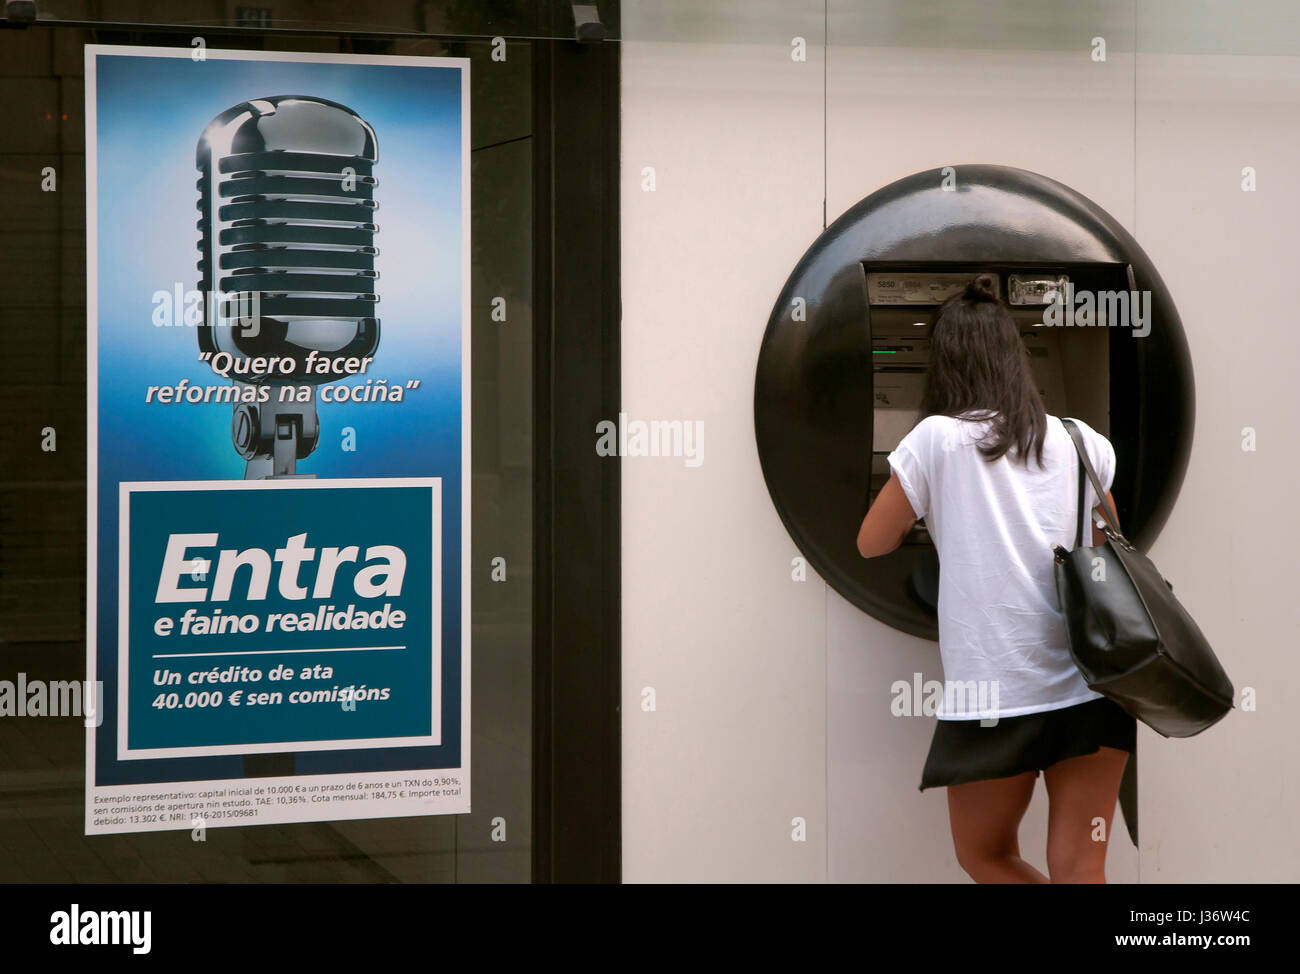 Banca, bancomat (ATM) e la pubblicità in lingua Galiziana, Lugo, regione della Galizia, Spagna, Europa Foto Stock